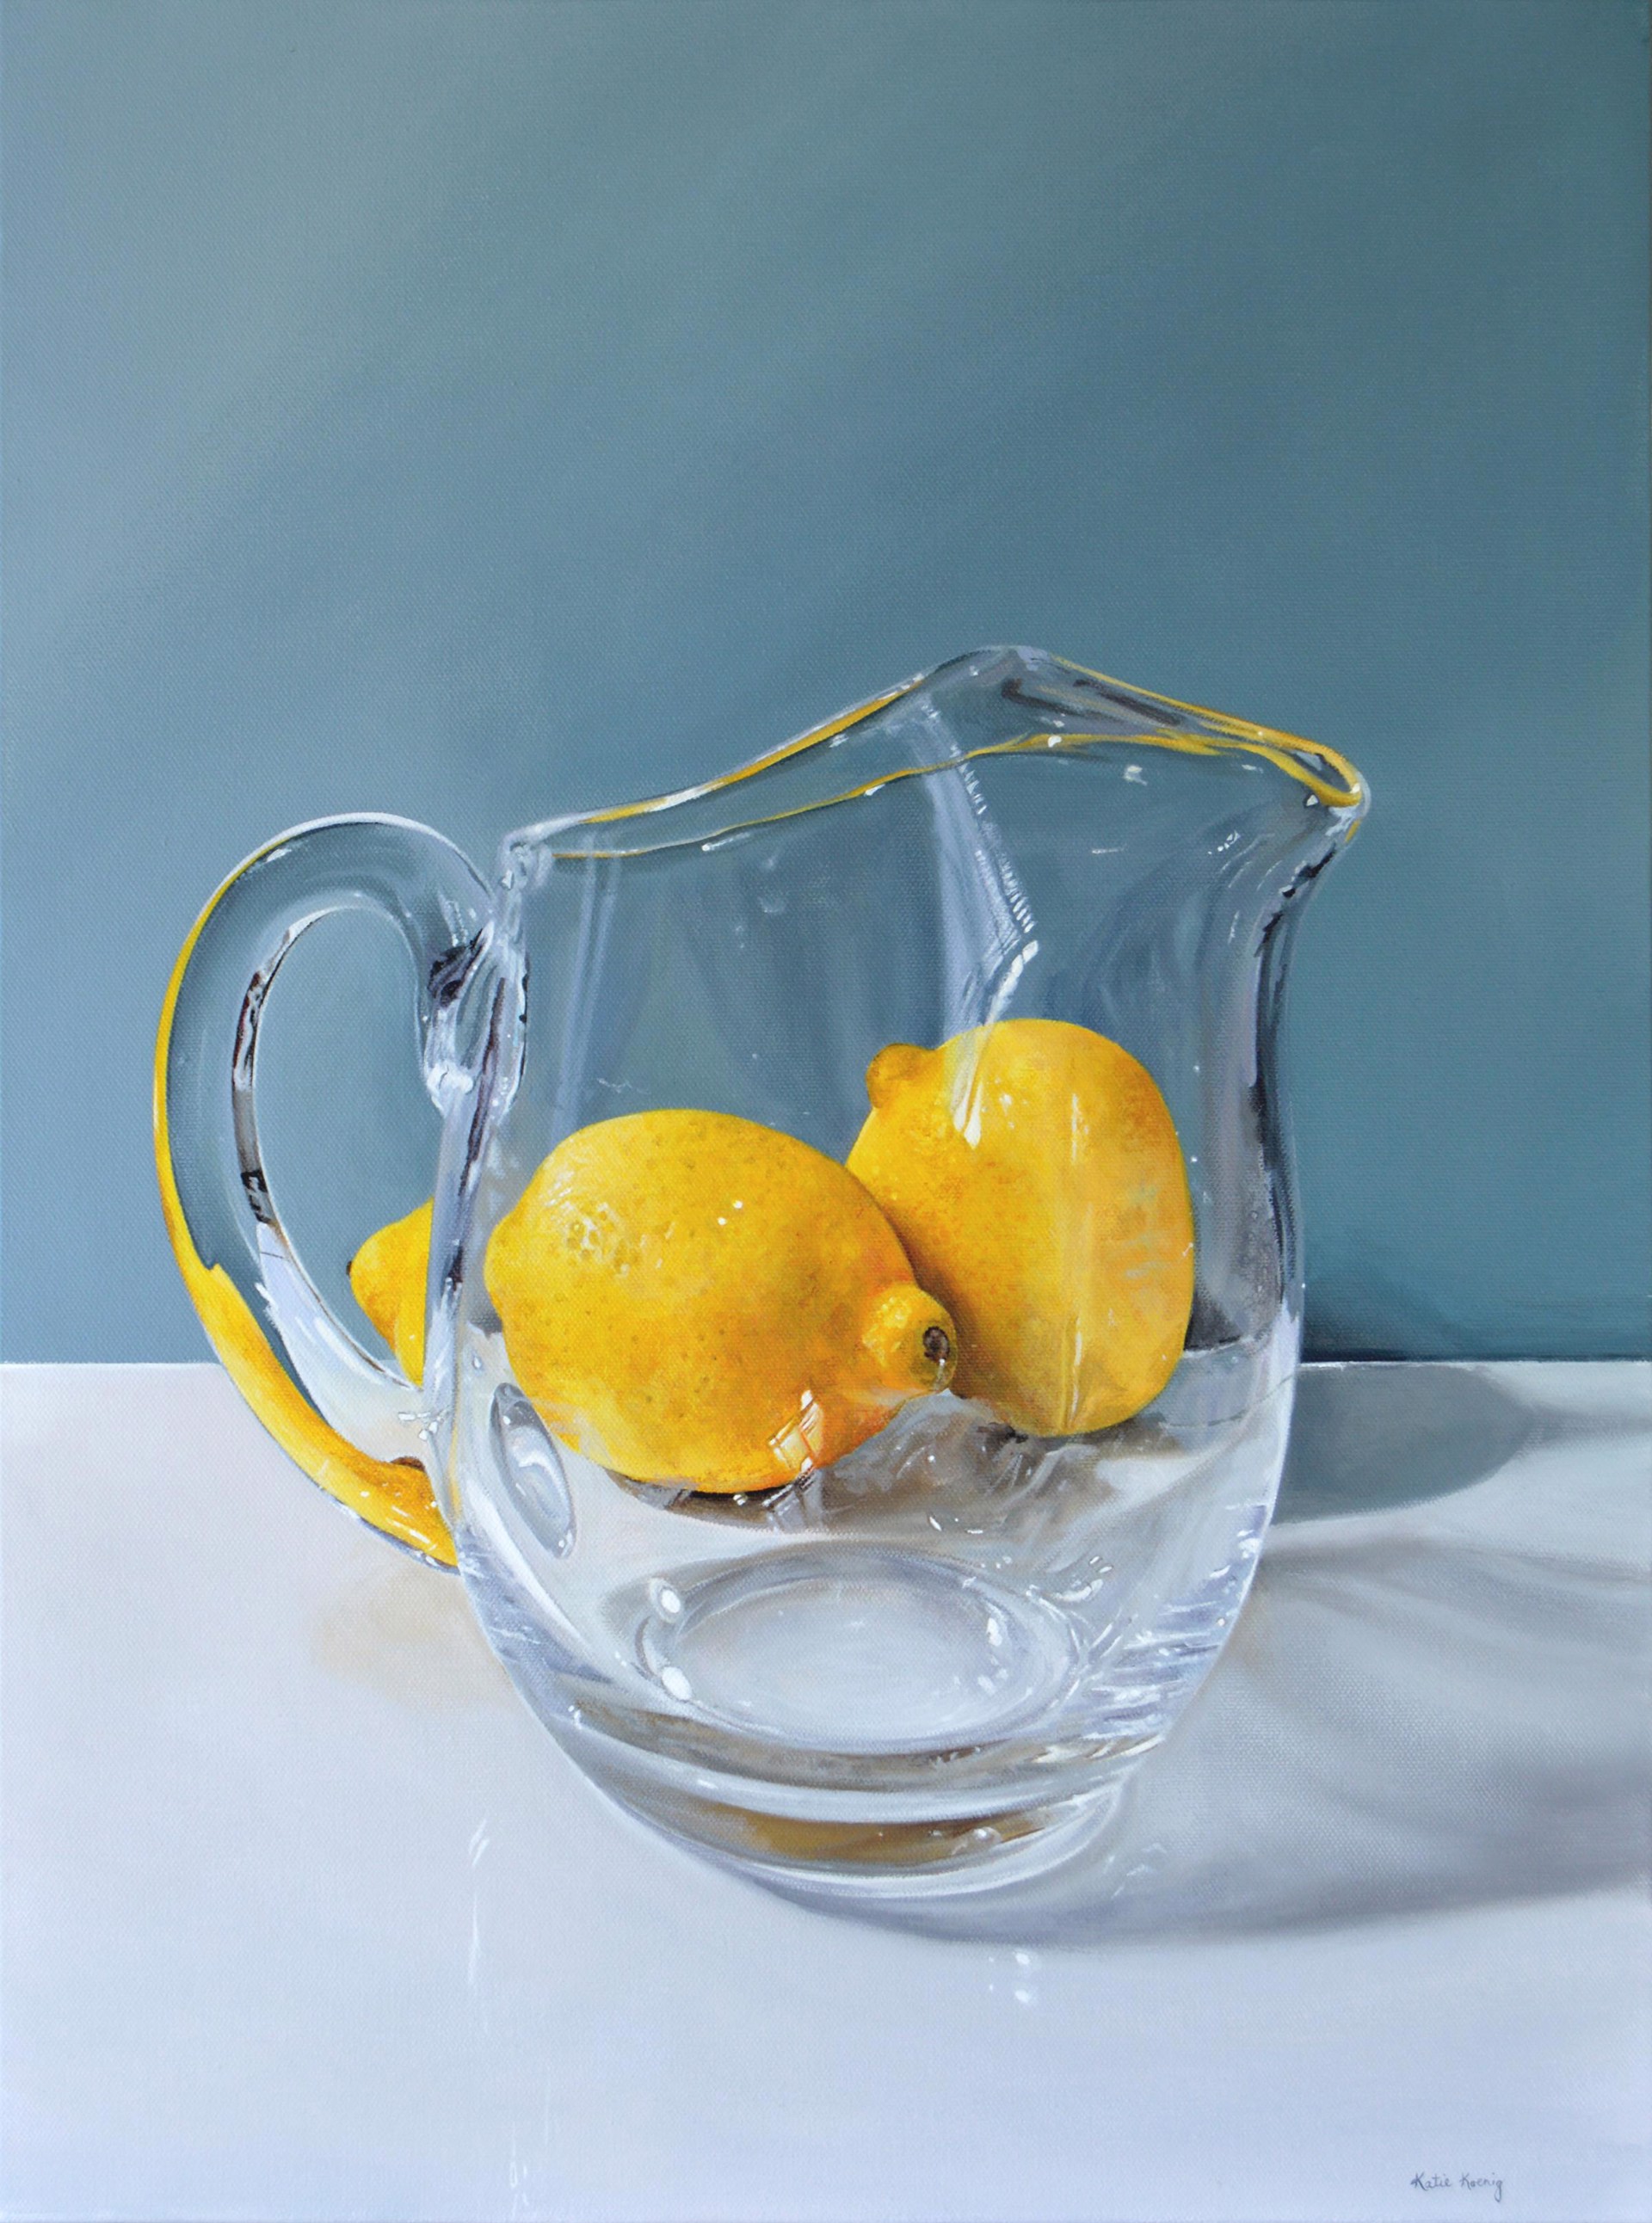 Making Lemonade by Katie Koenig